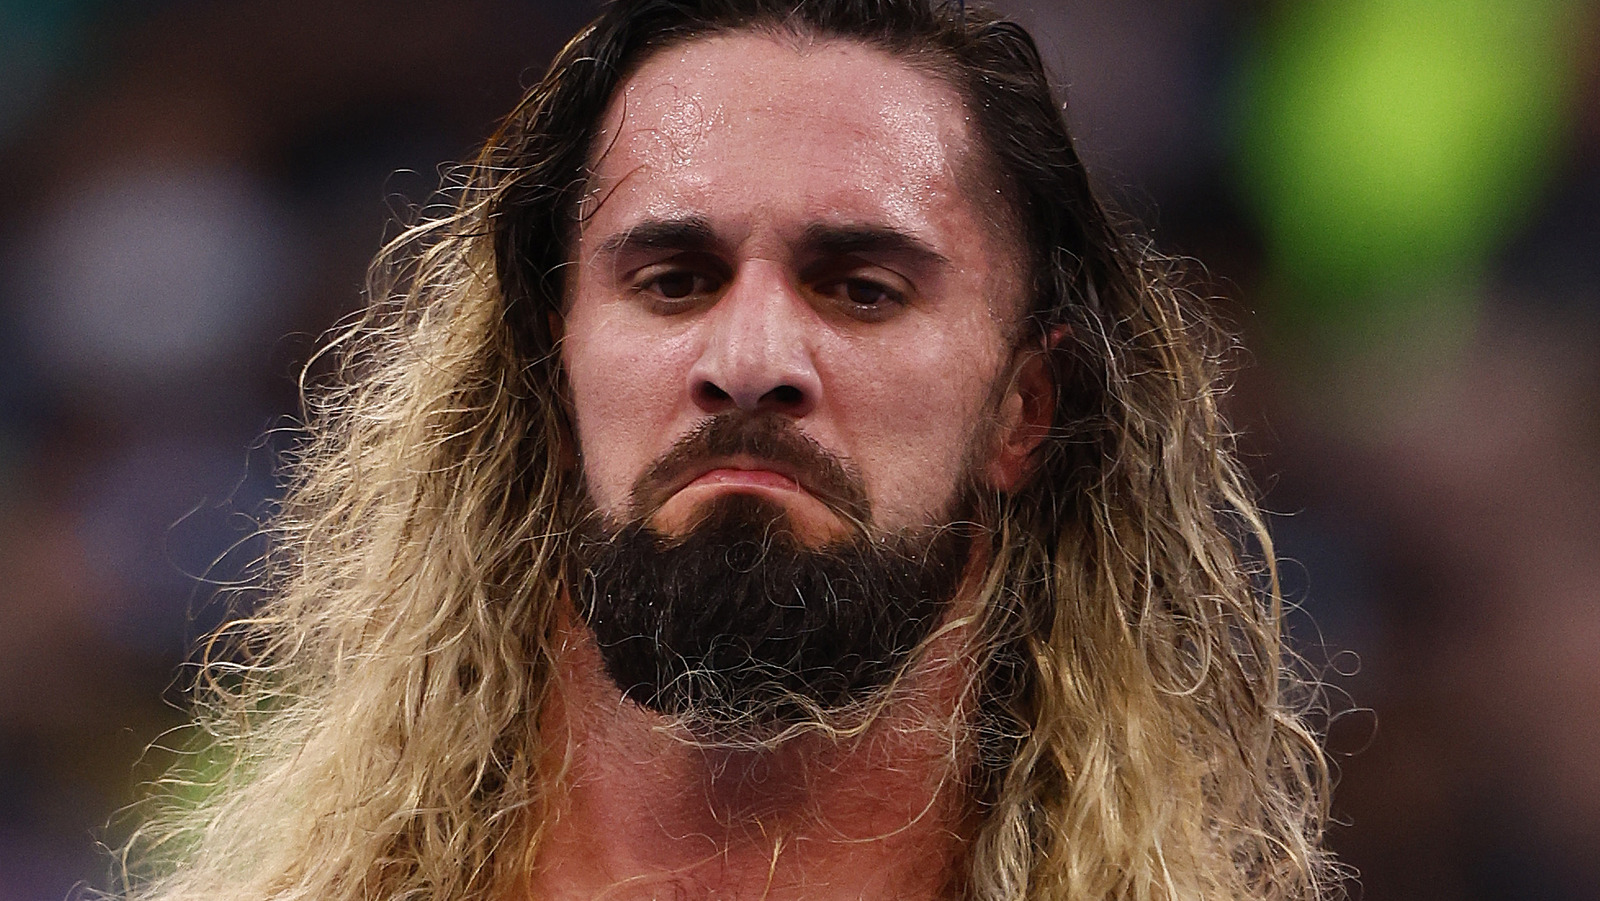 Las imágenes sugieren que el segmento de WWE Raw de Seth Rollins puede haber sido cortado durante la pausa comercial